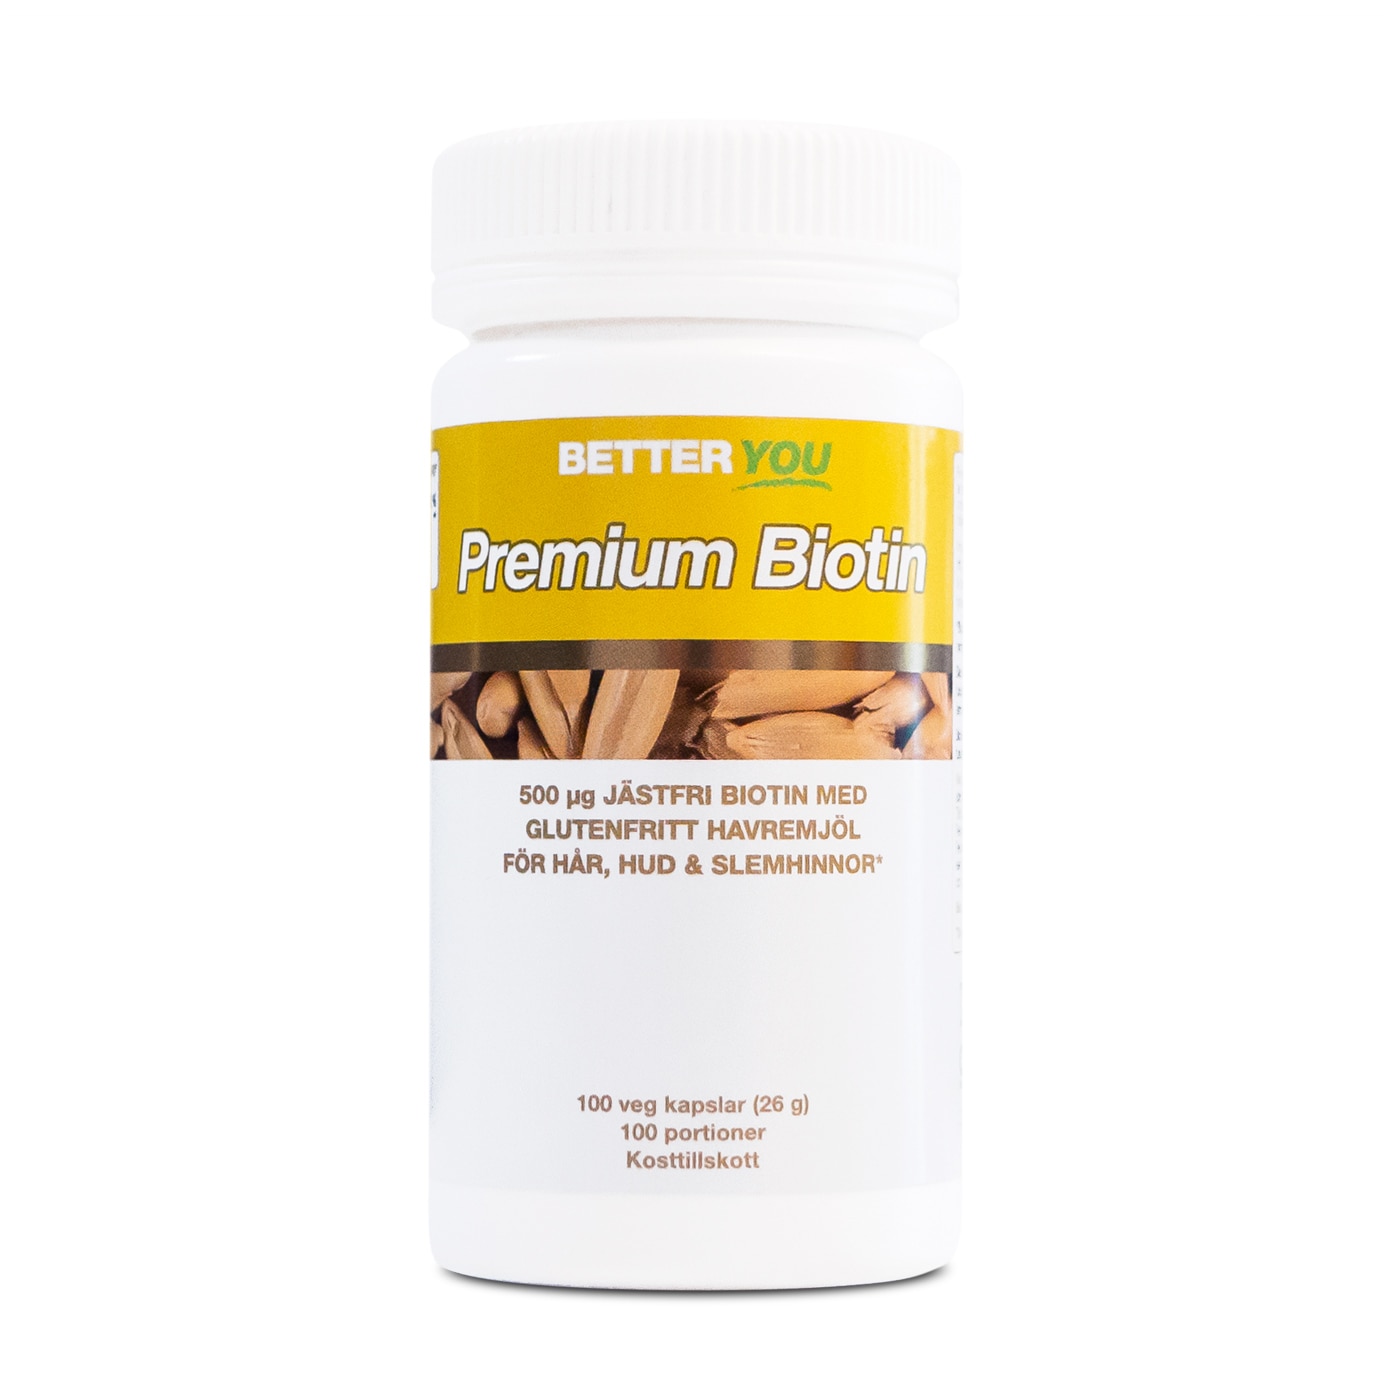 Premium Biotin